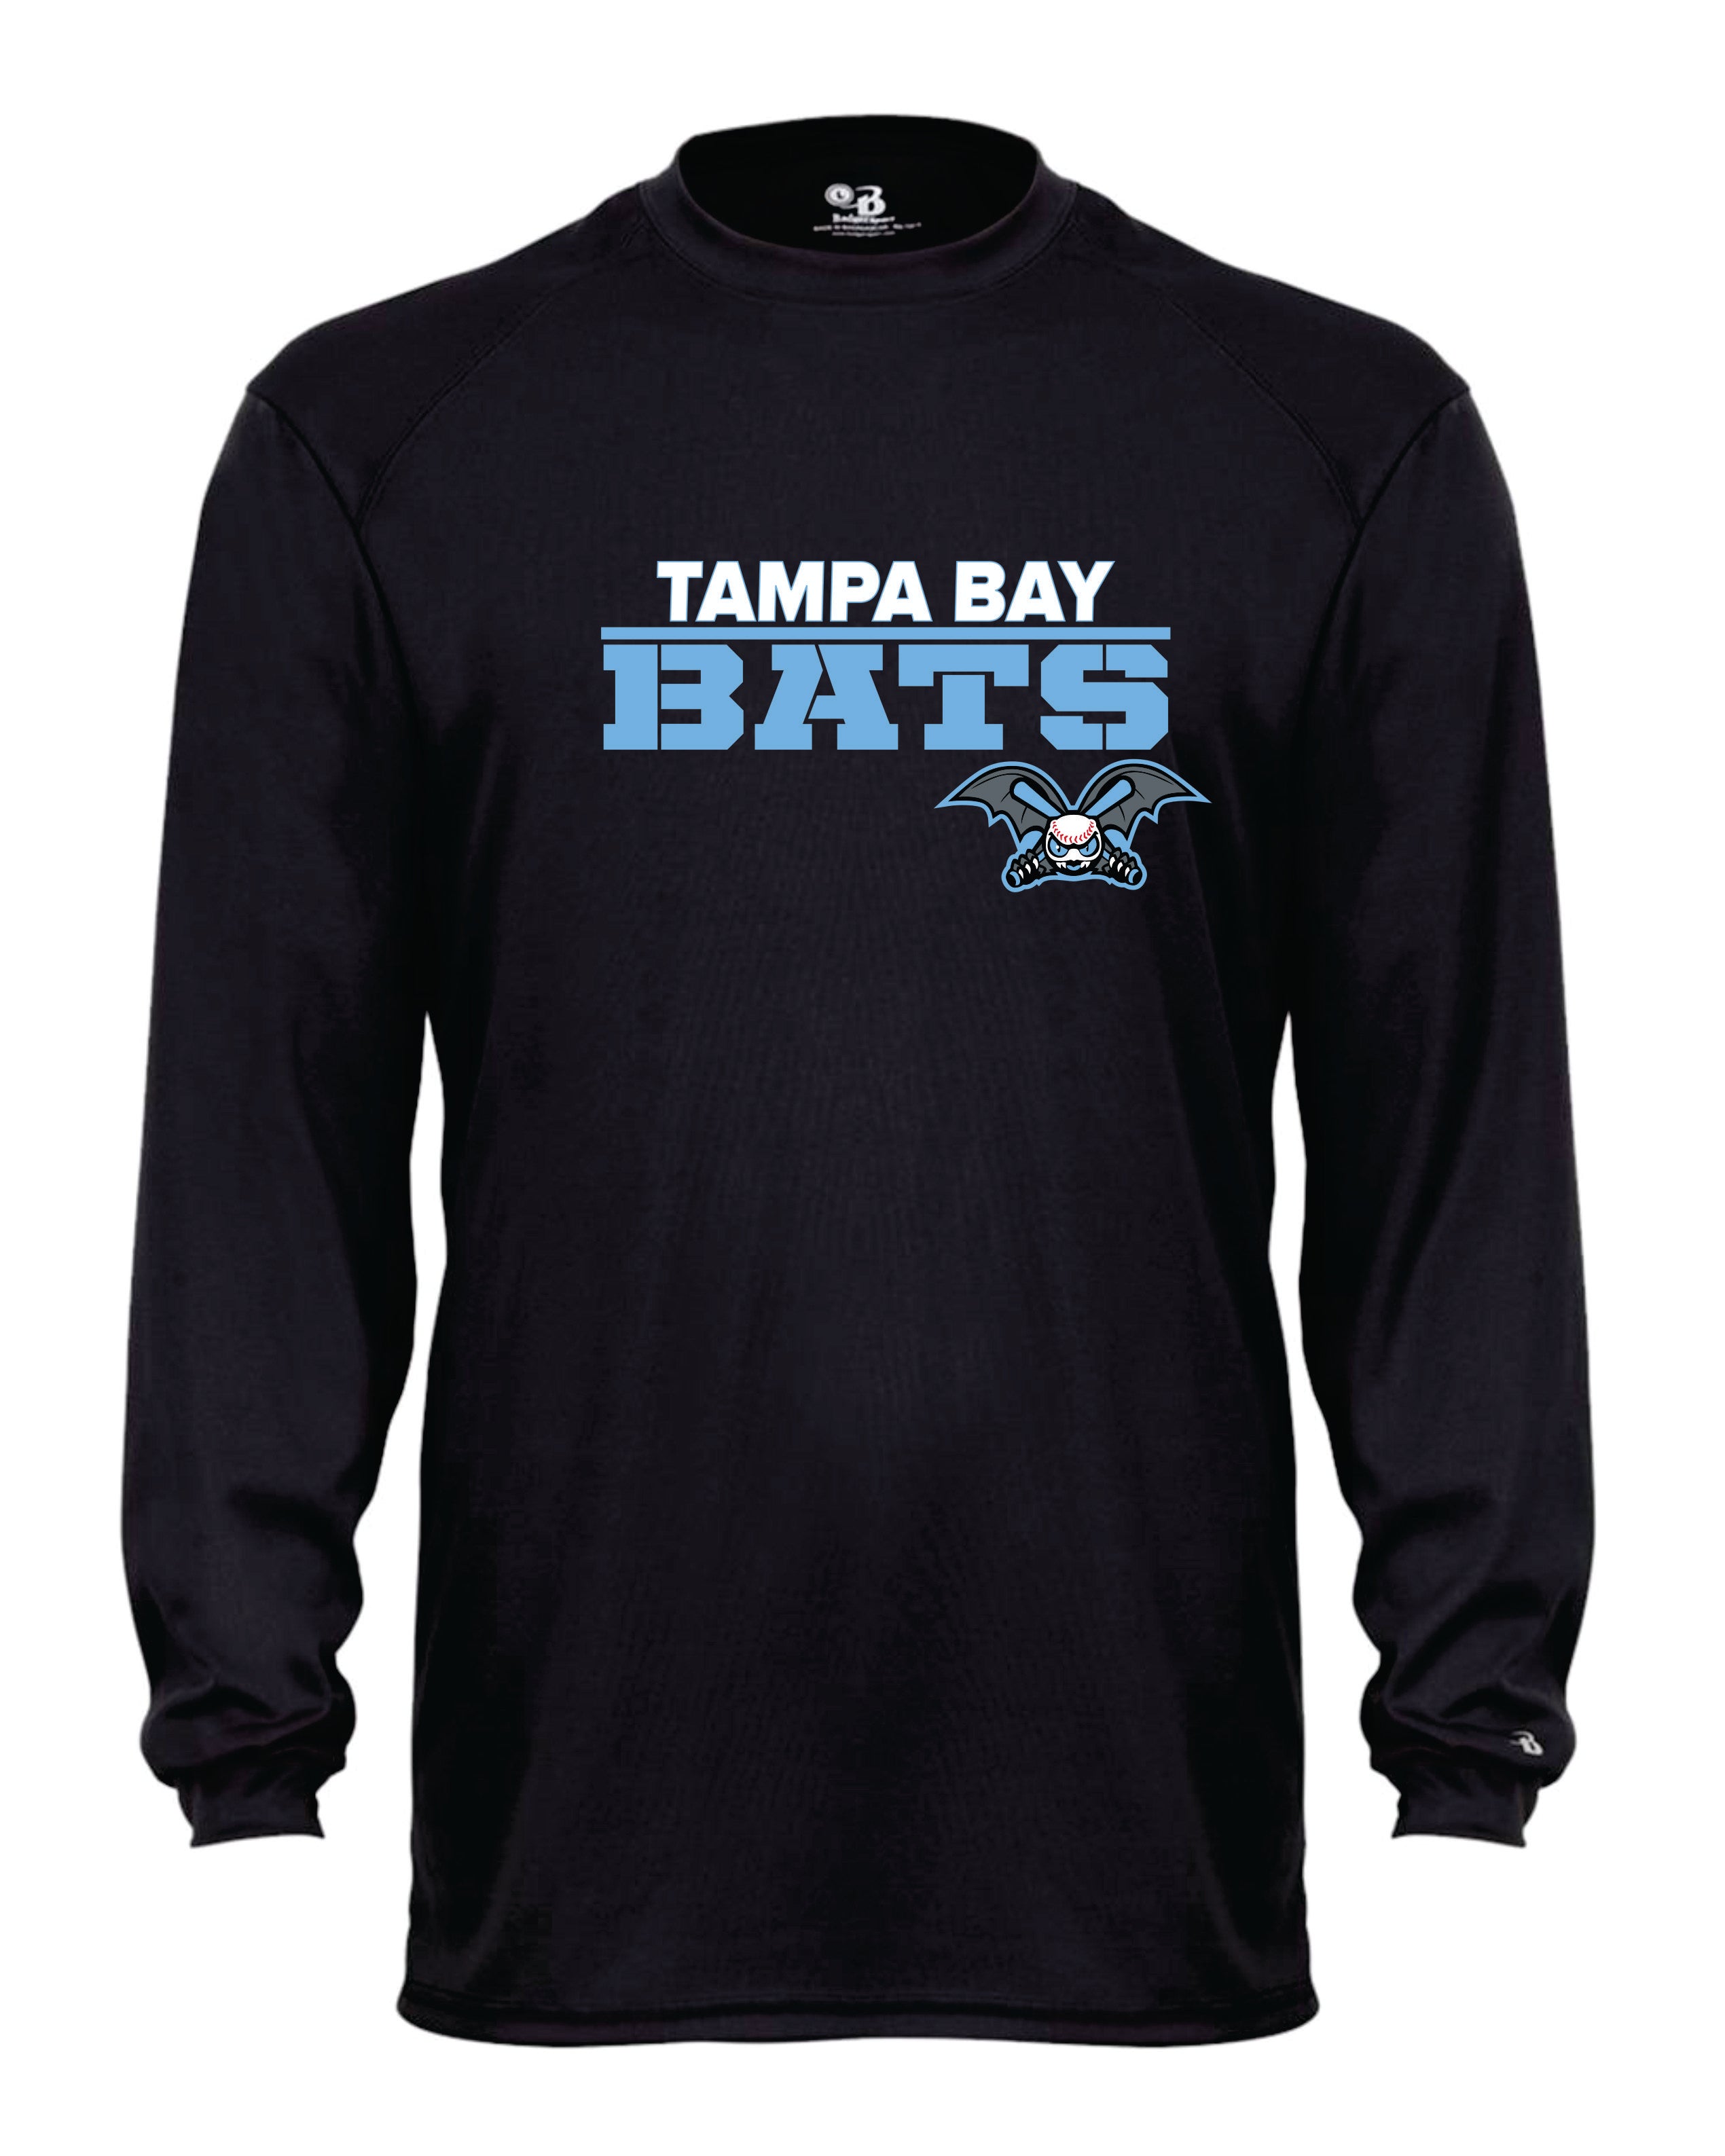 Tampa Bay Bats Long Sleeve Badger Dri Fit Shirt - YOUTH